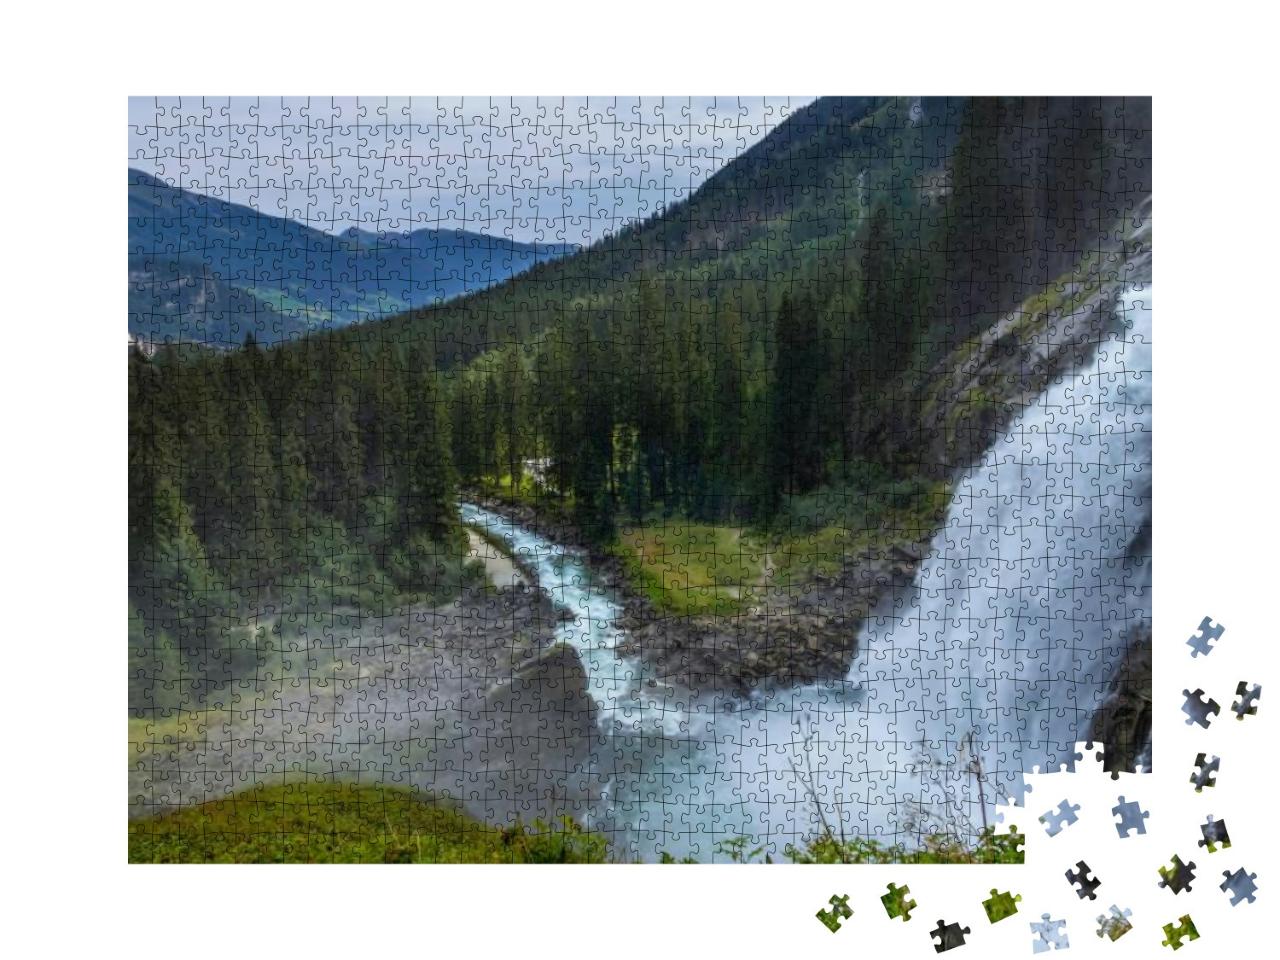 Puzzle 1000 Teile „Krimmler Wasserfälle, Nationalpark Hohe Tauern, Salzburger Land, Österreich“